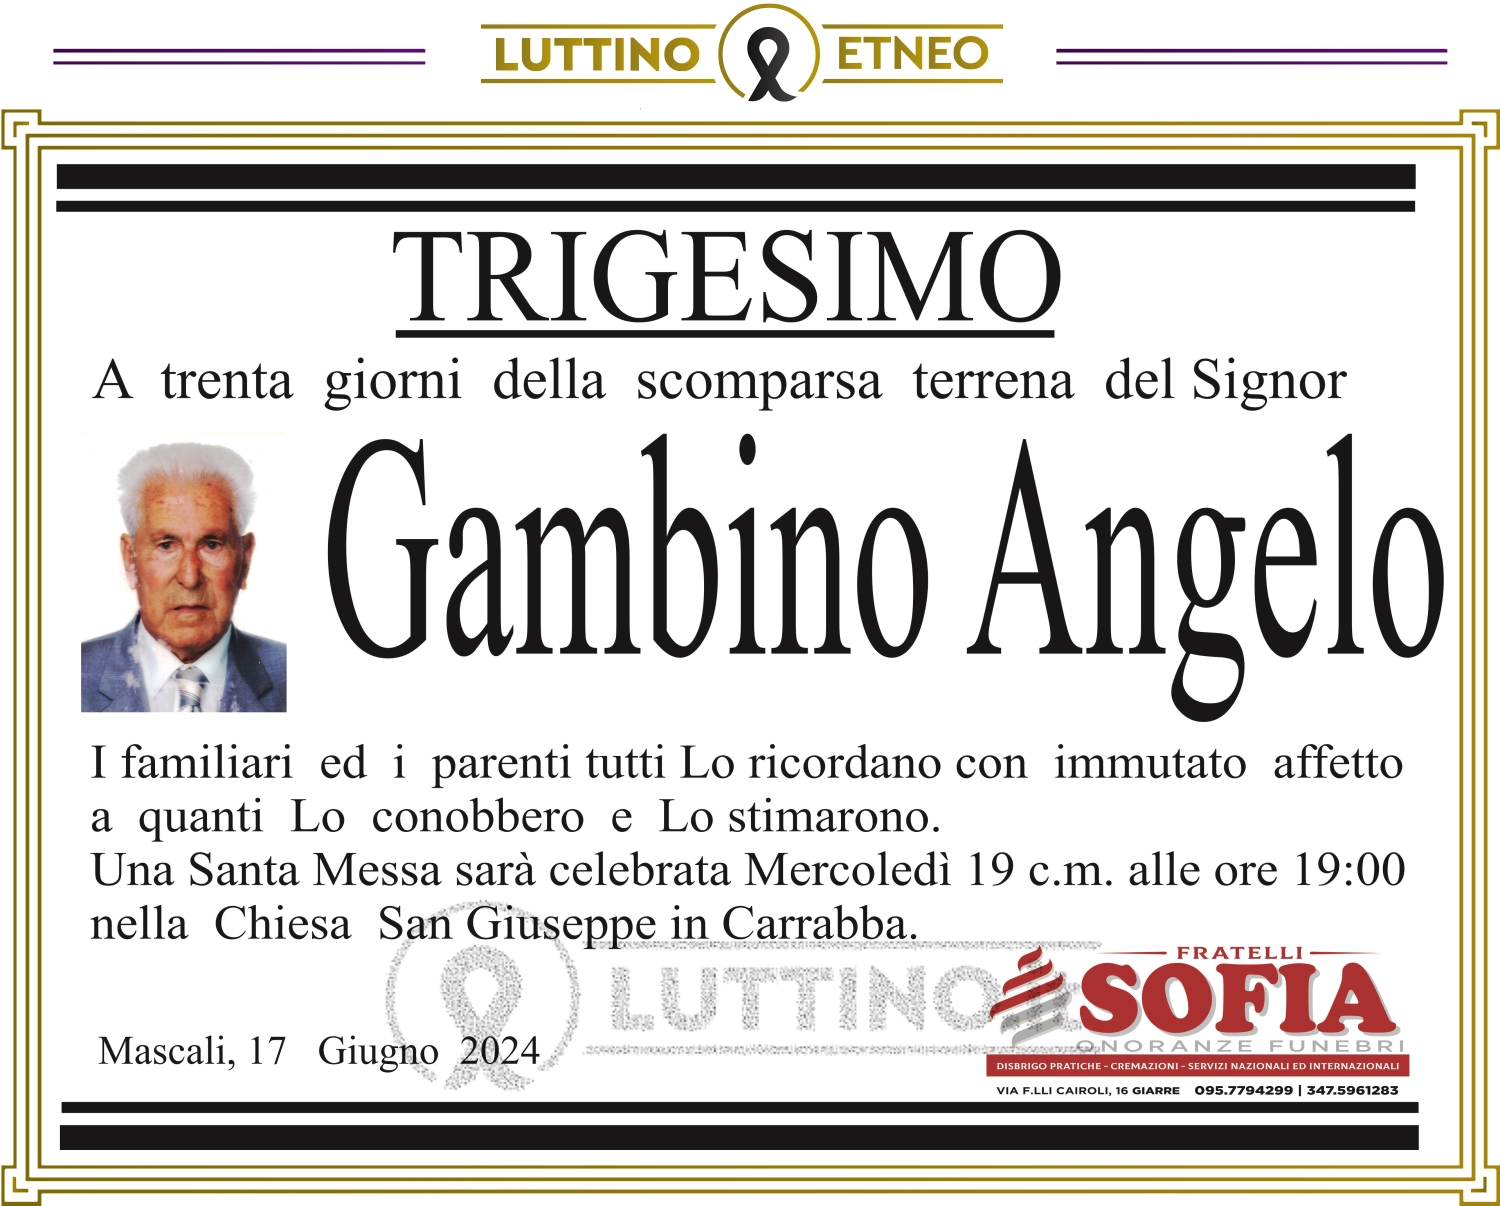 Angelo Gambino